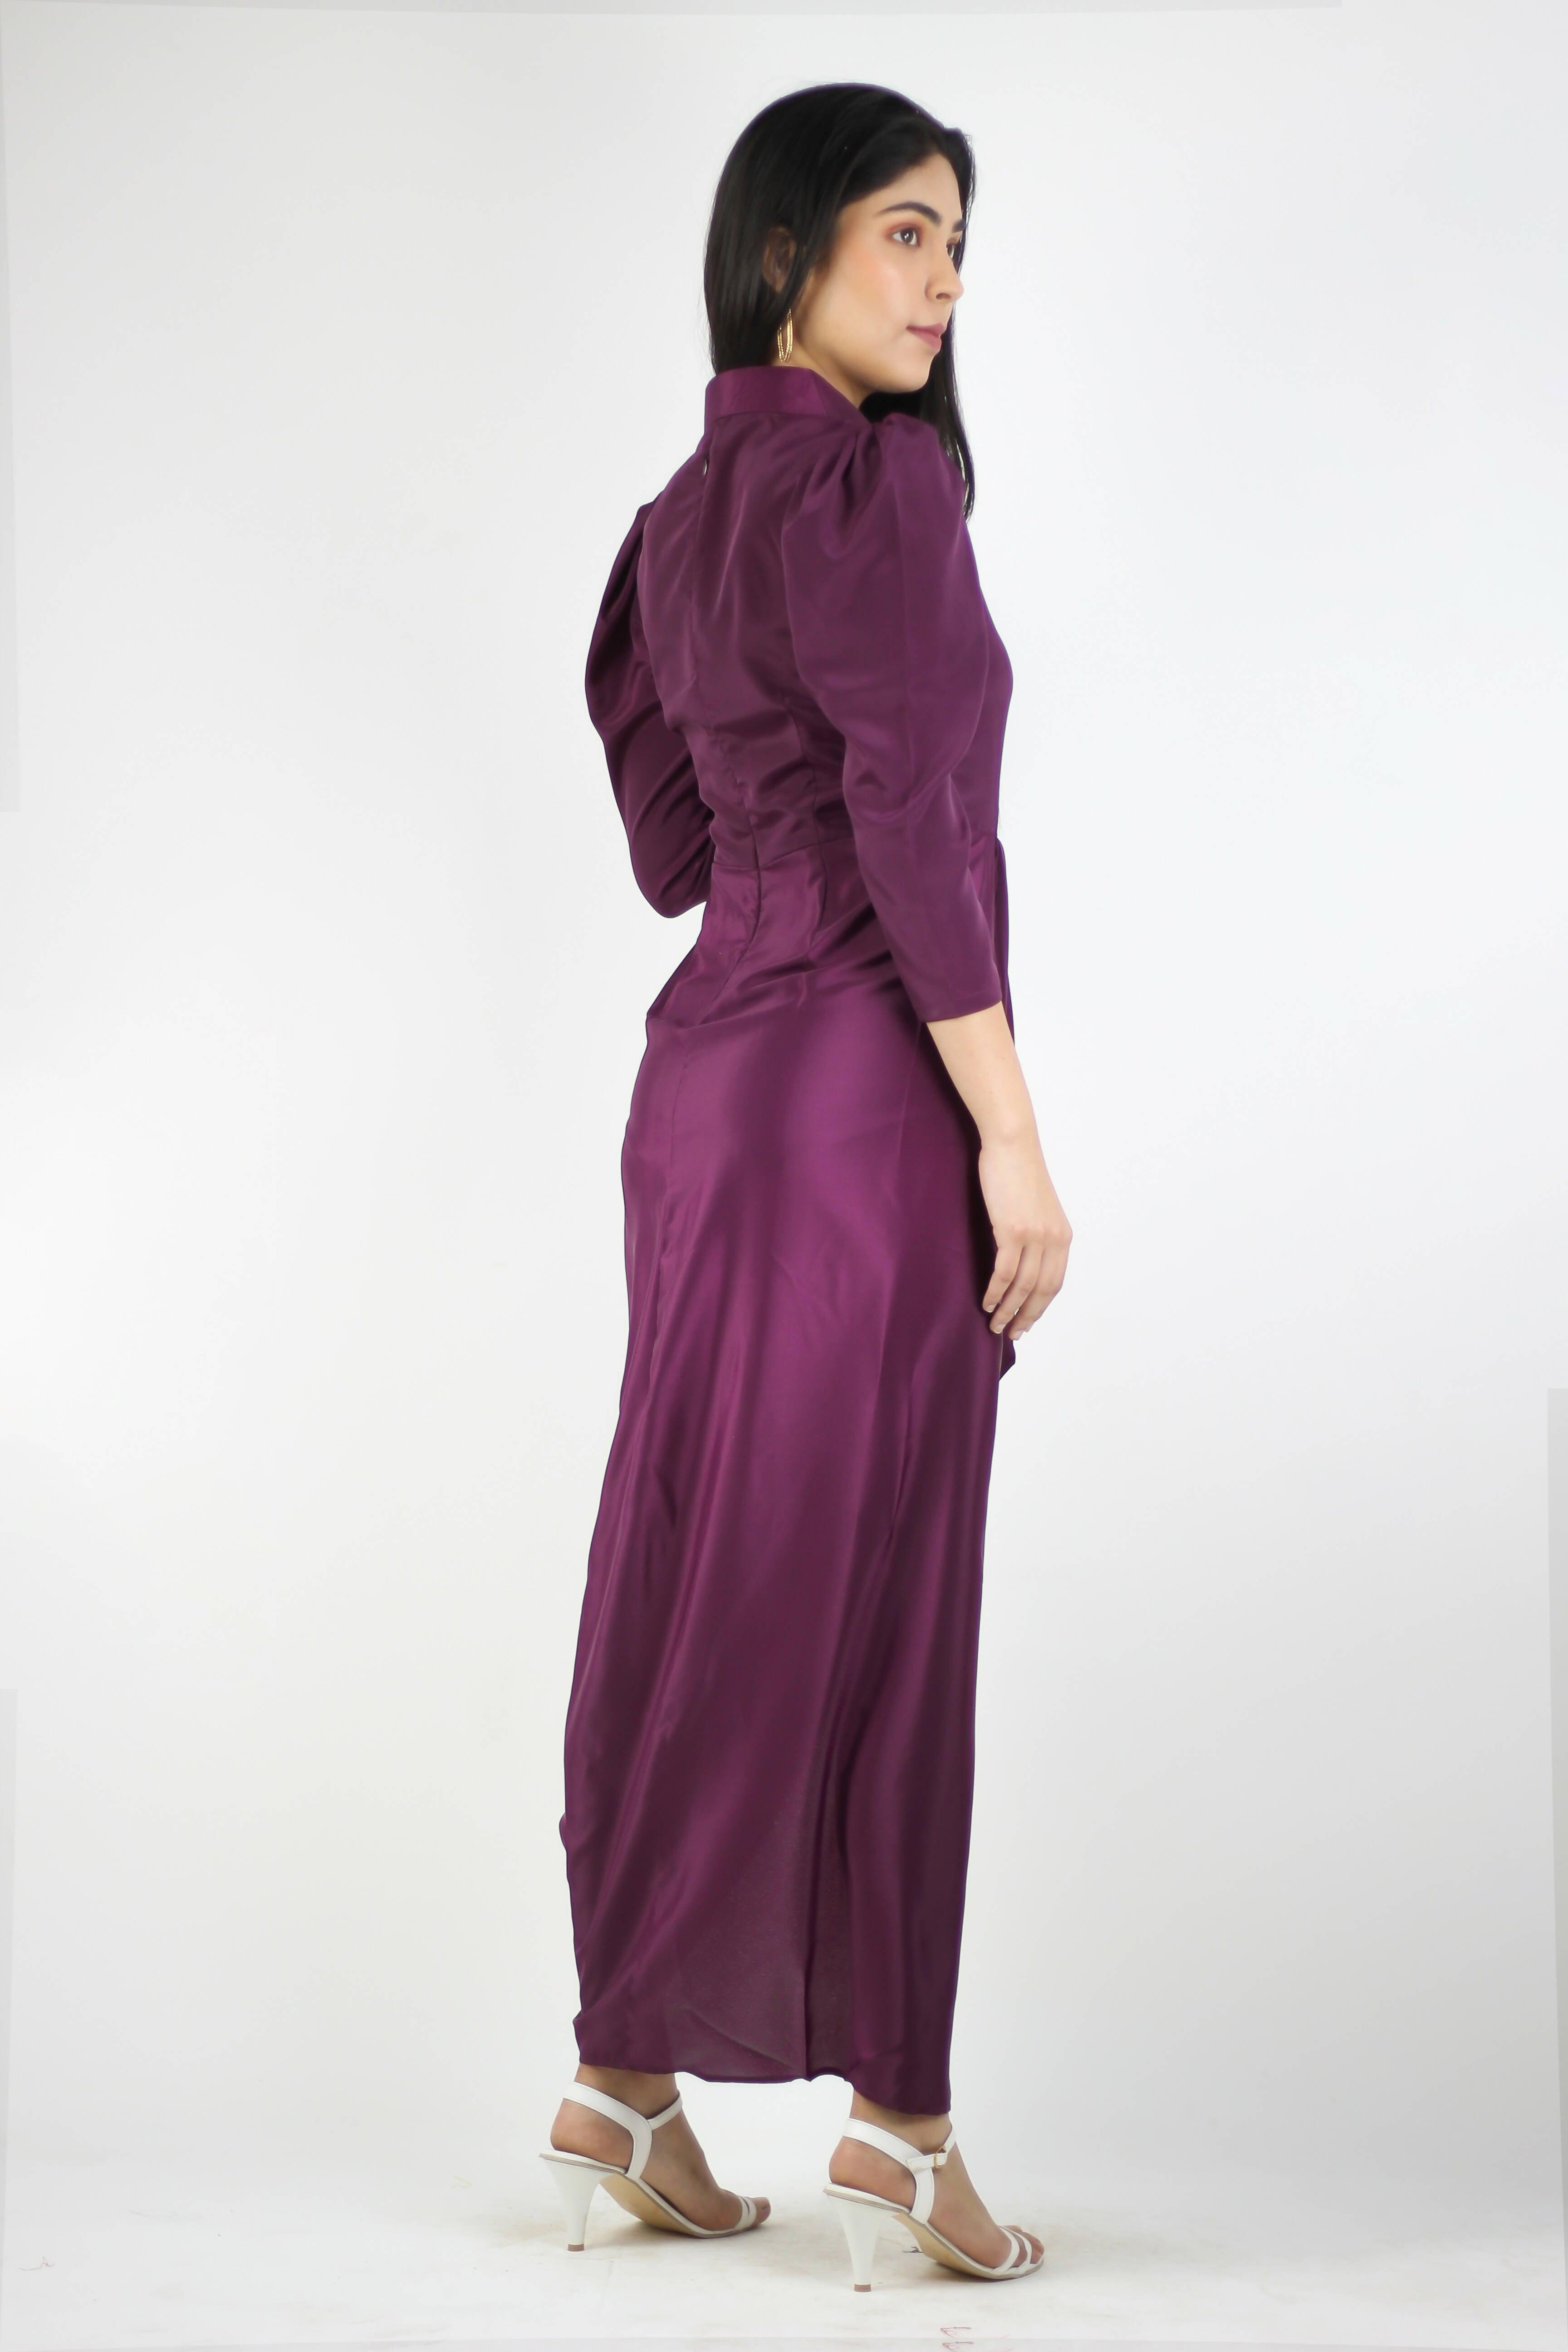 Artyska Women's Ankle Length Designer Dress.